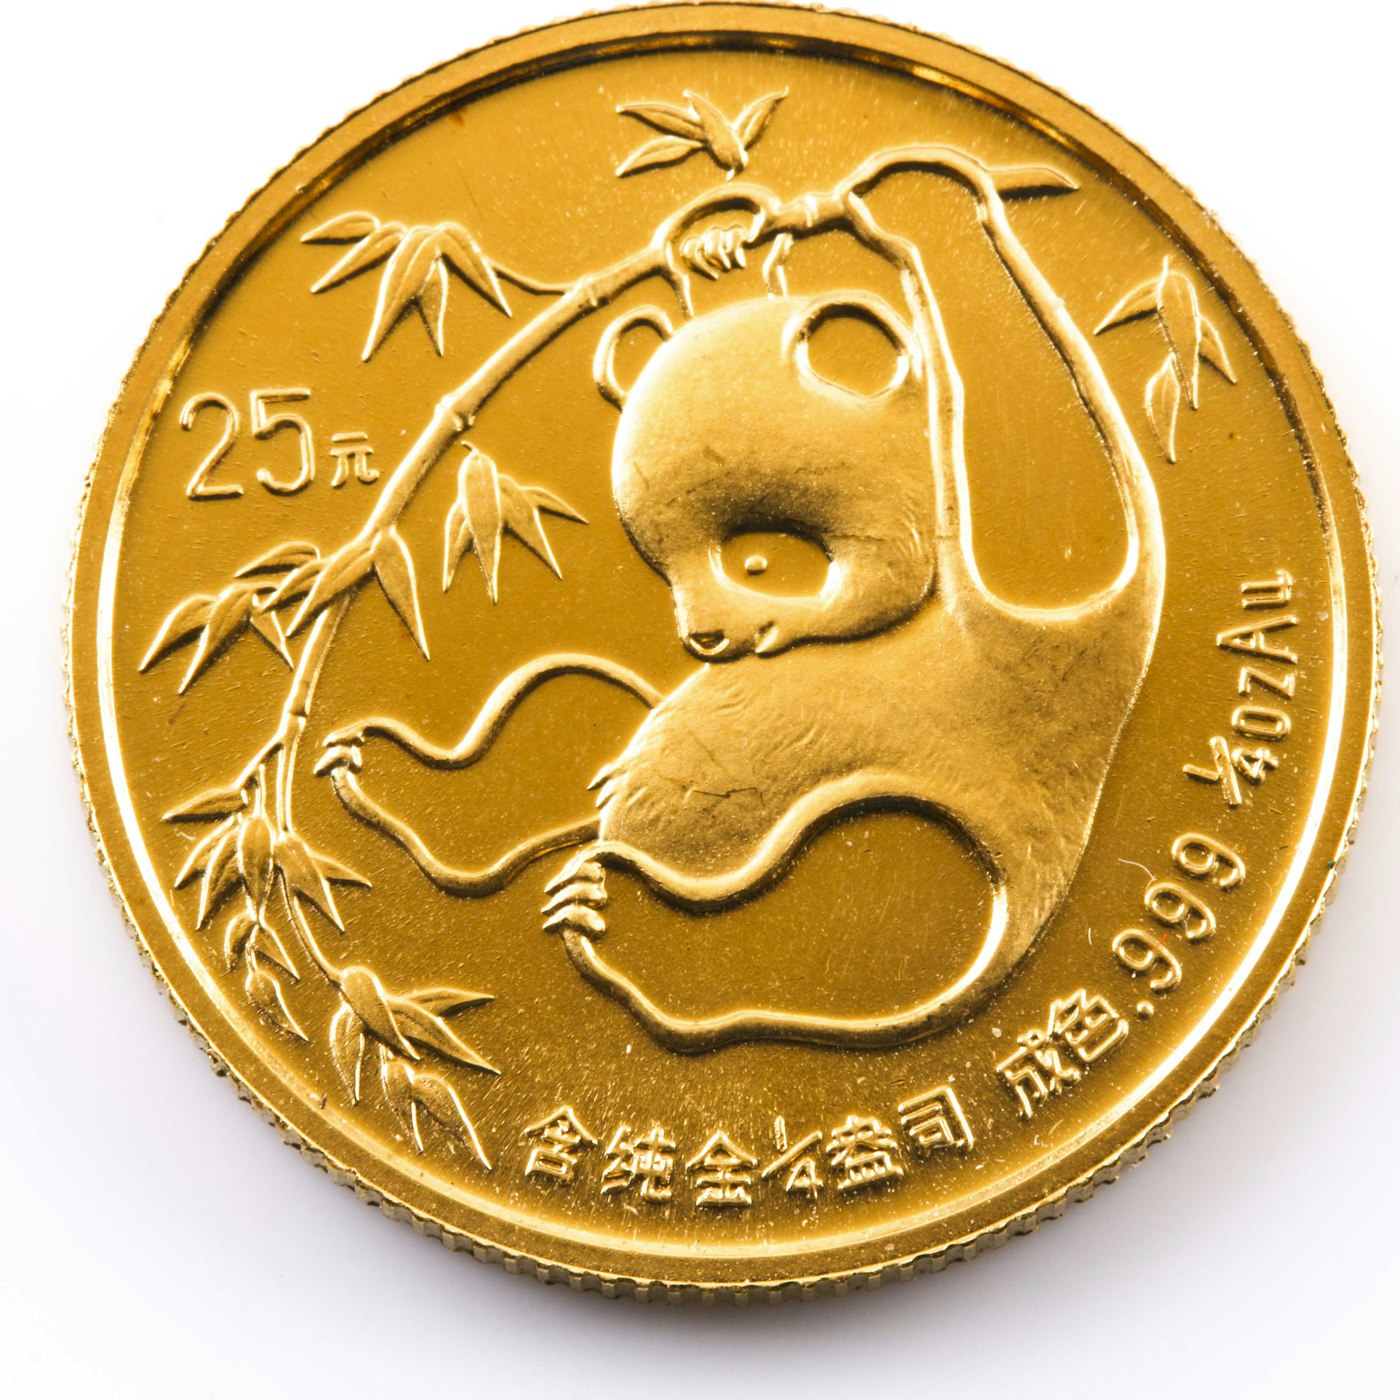 btc panda coin